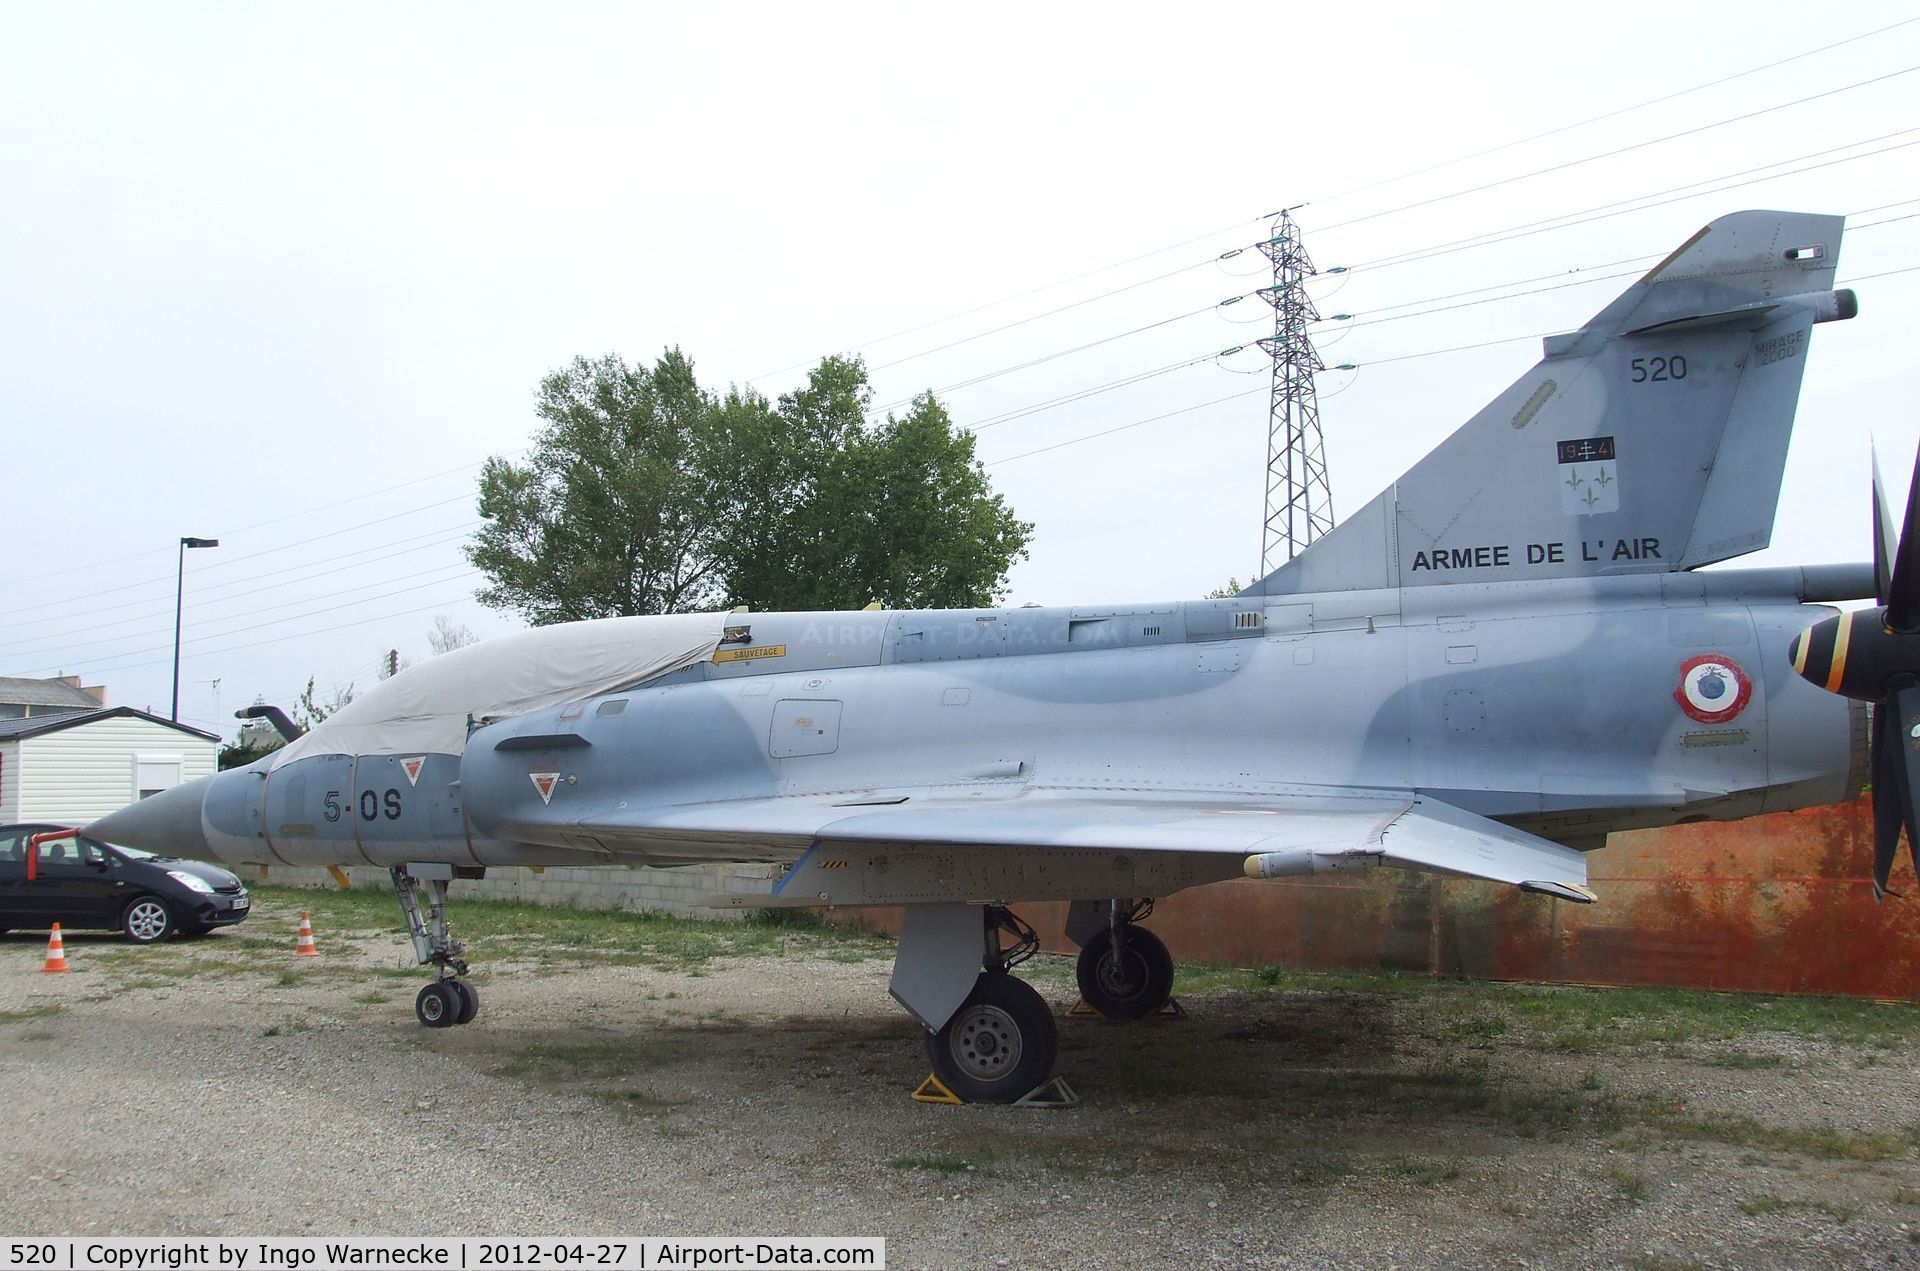 520, Dassault Mirage 2000B C/N 247, Dassault Mirage 2000B at the Musee Aeronautique, Orange